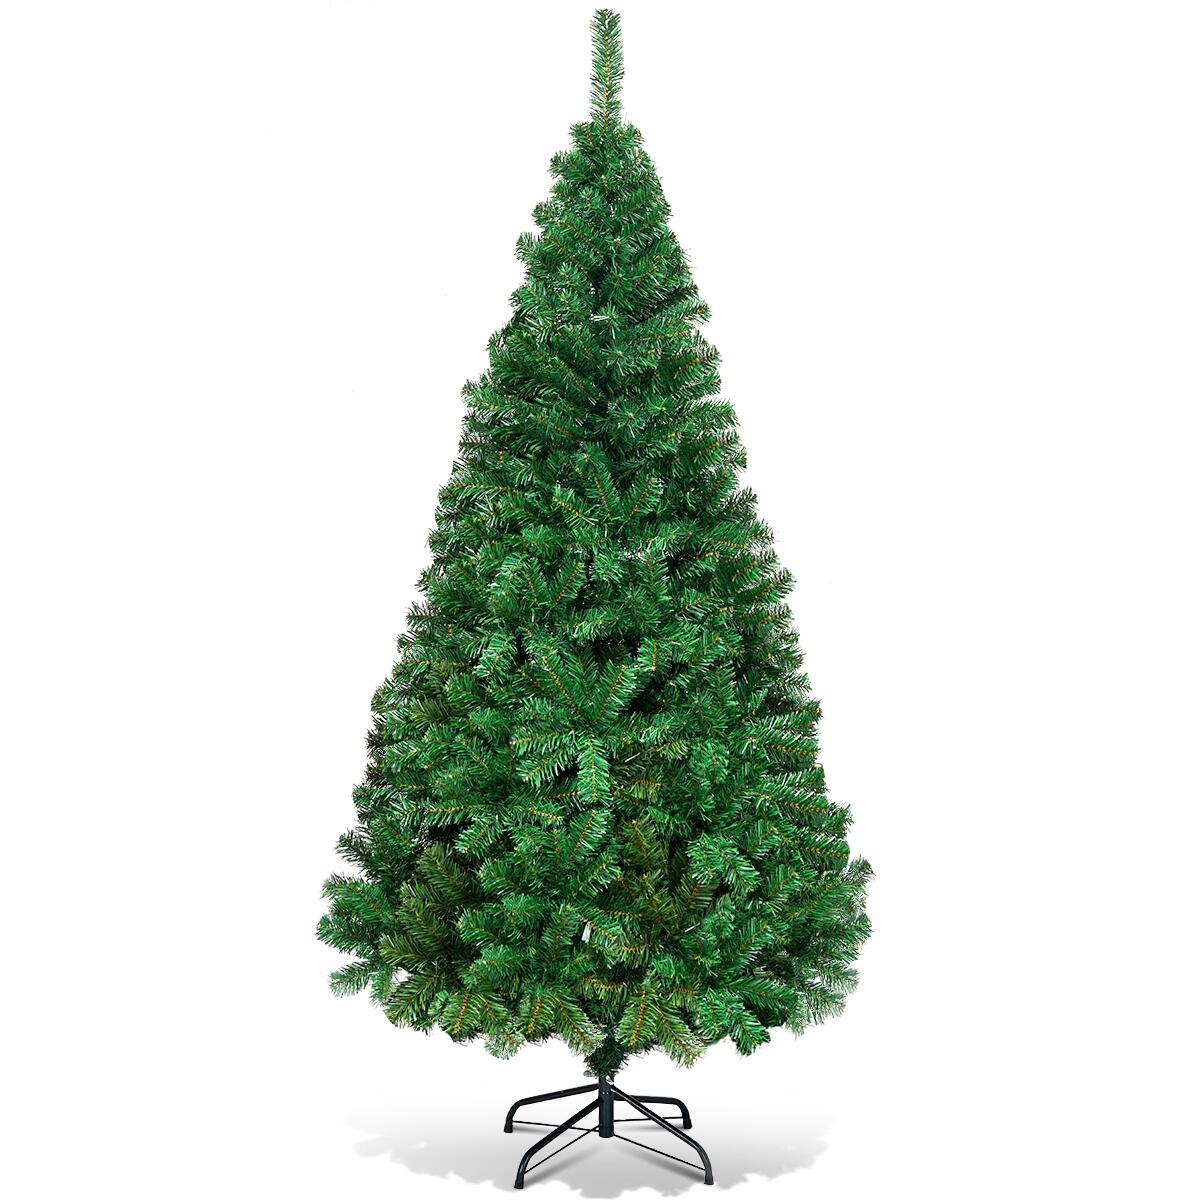 Costway 1,8m Árbol de Navidad Artificial con Base Metálica Material PVC Hogar Abeto Verde